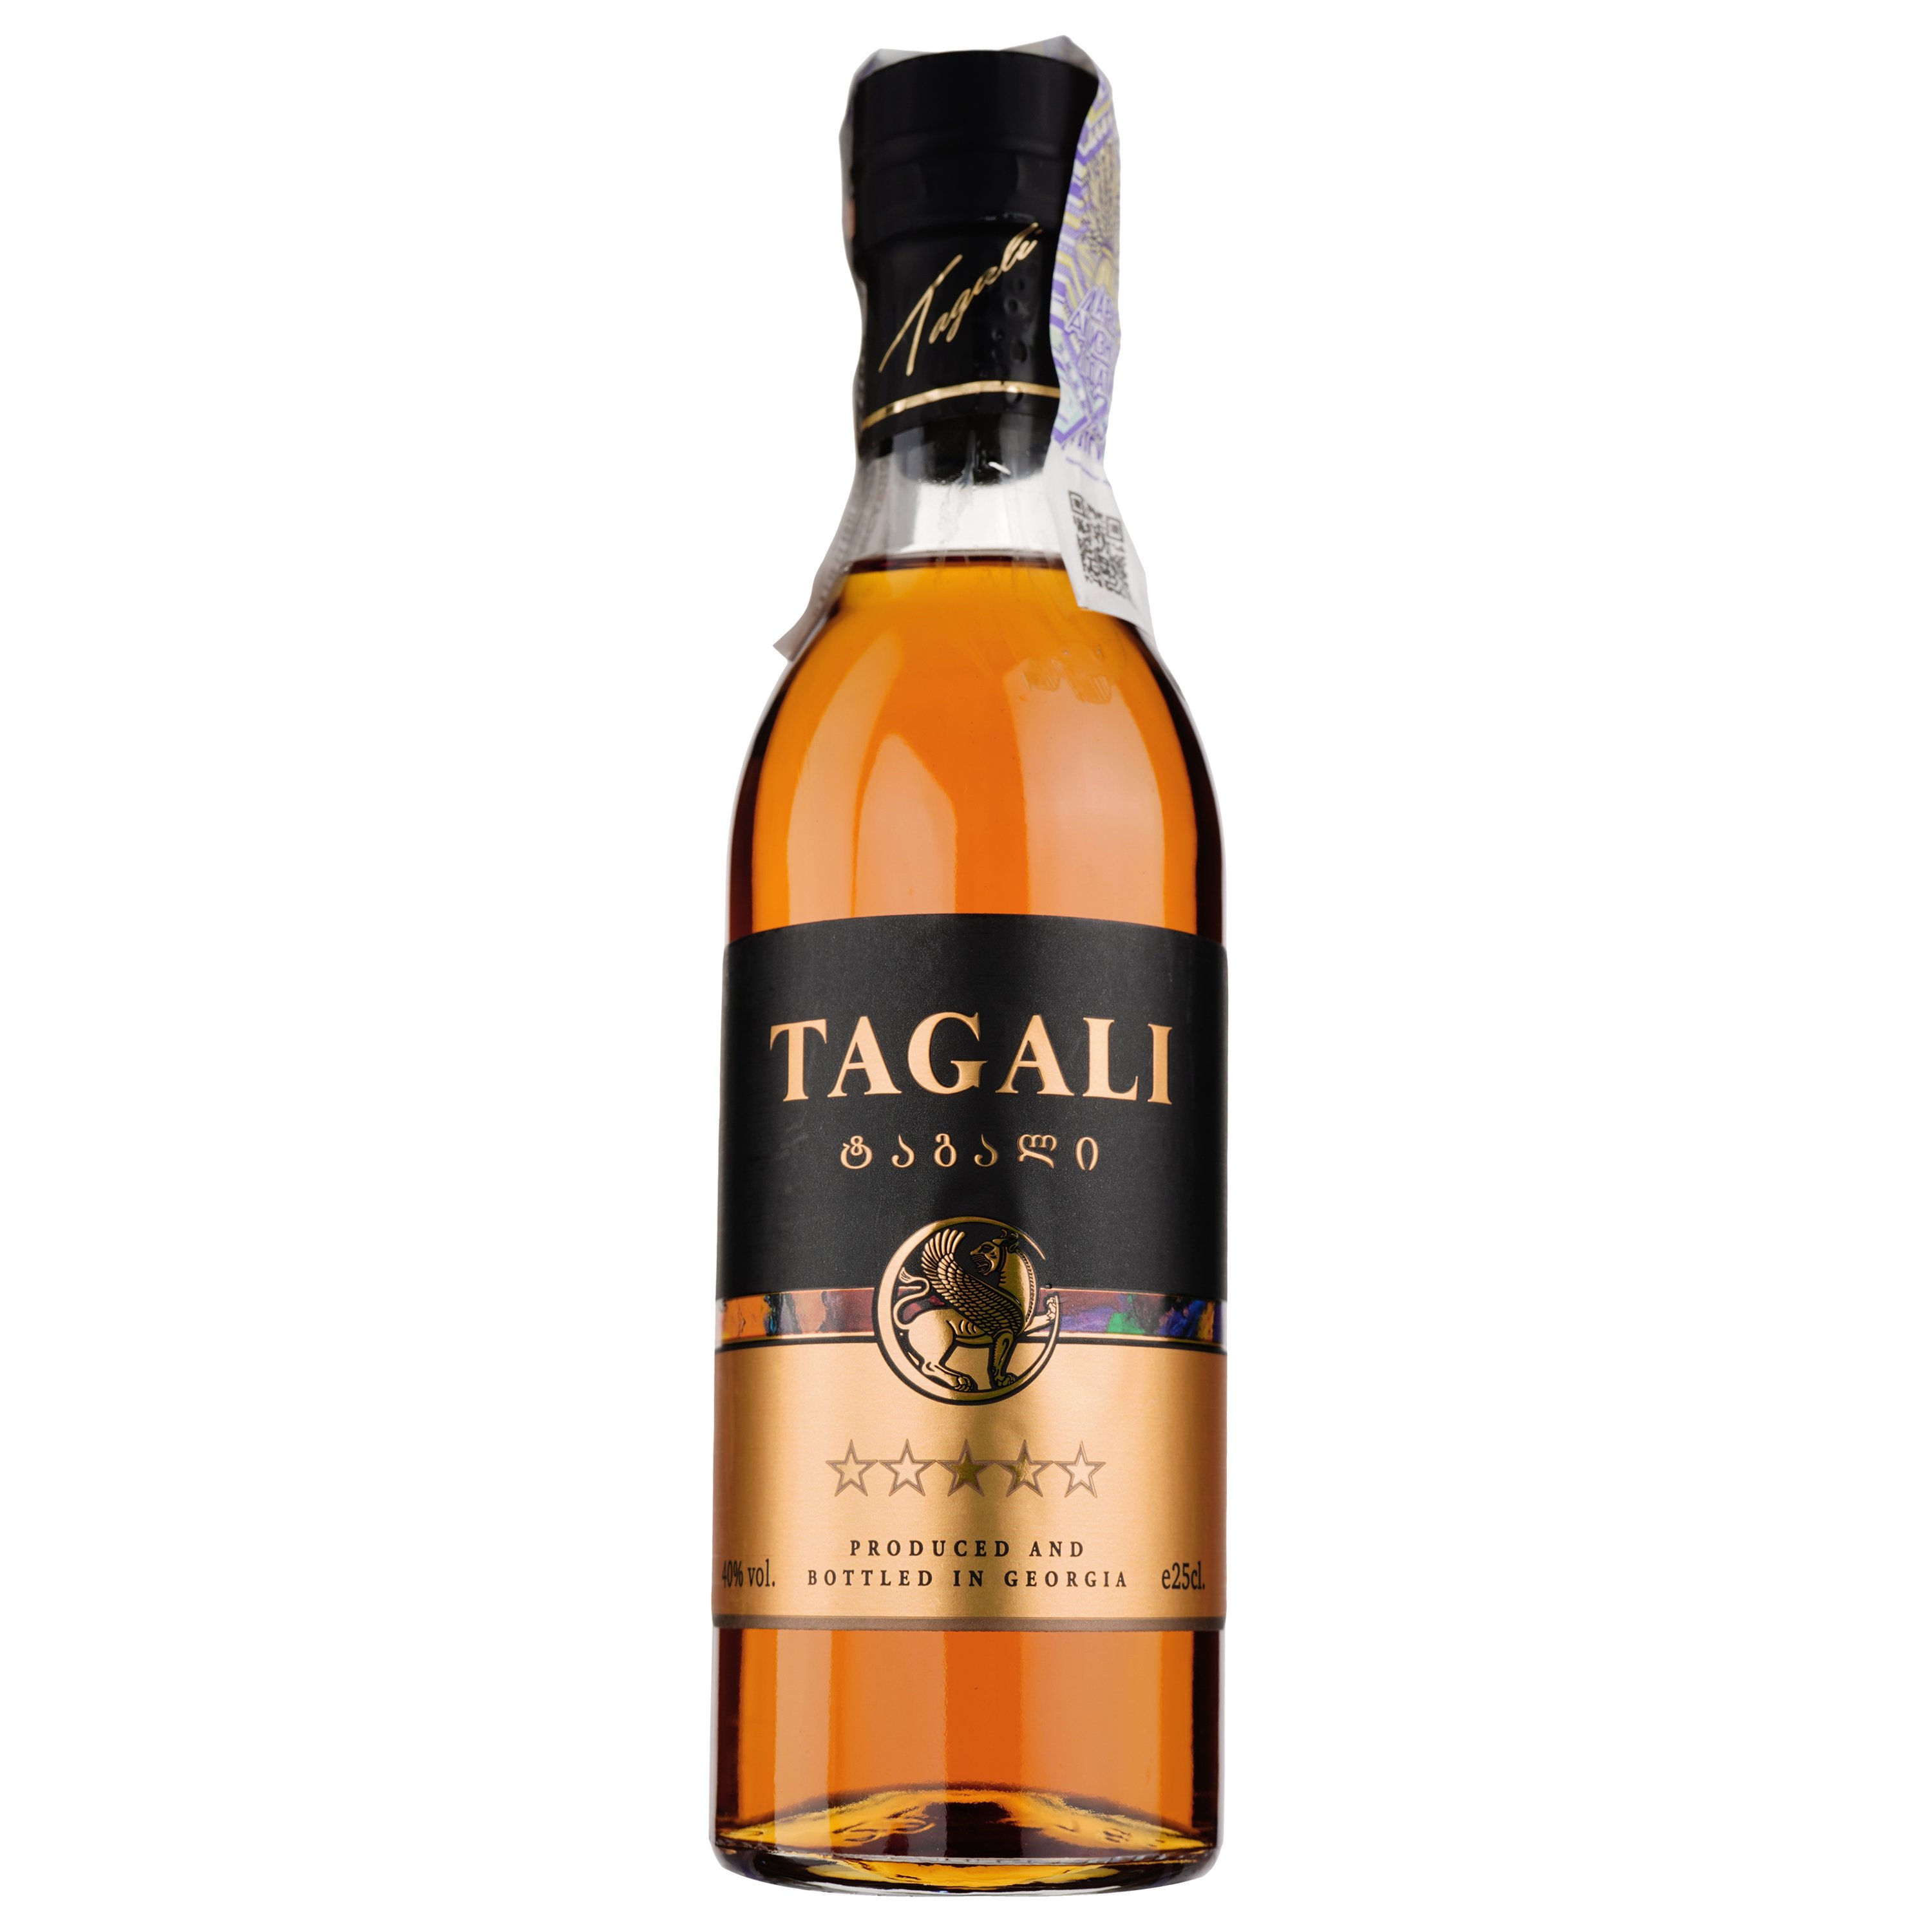 Оригинальный спиртной напиток Tagali 5 звезд, 40%, 0,25 л (865820) - фото 1